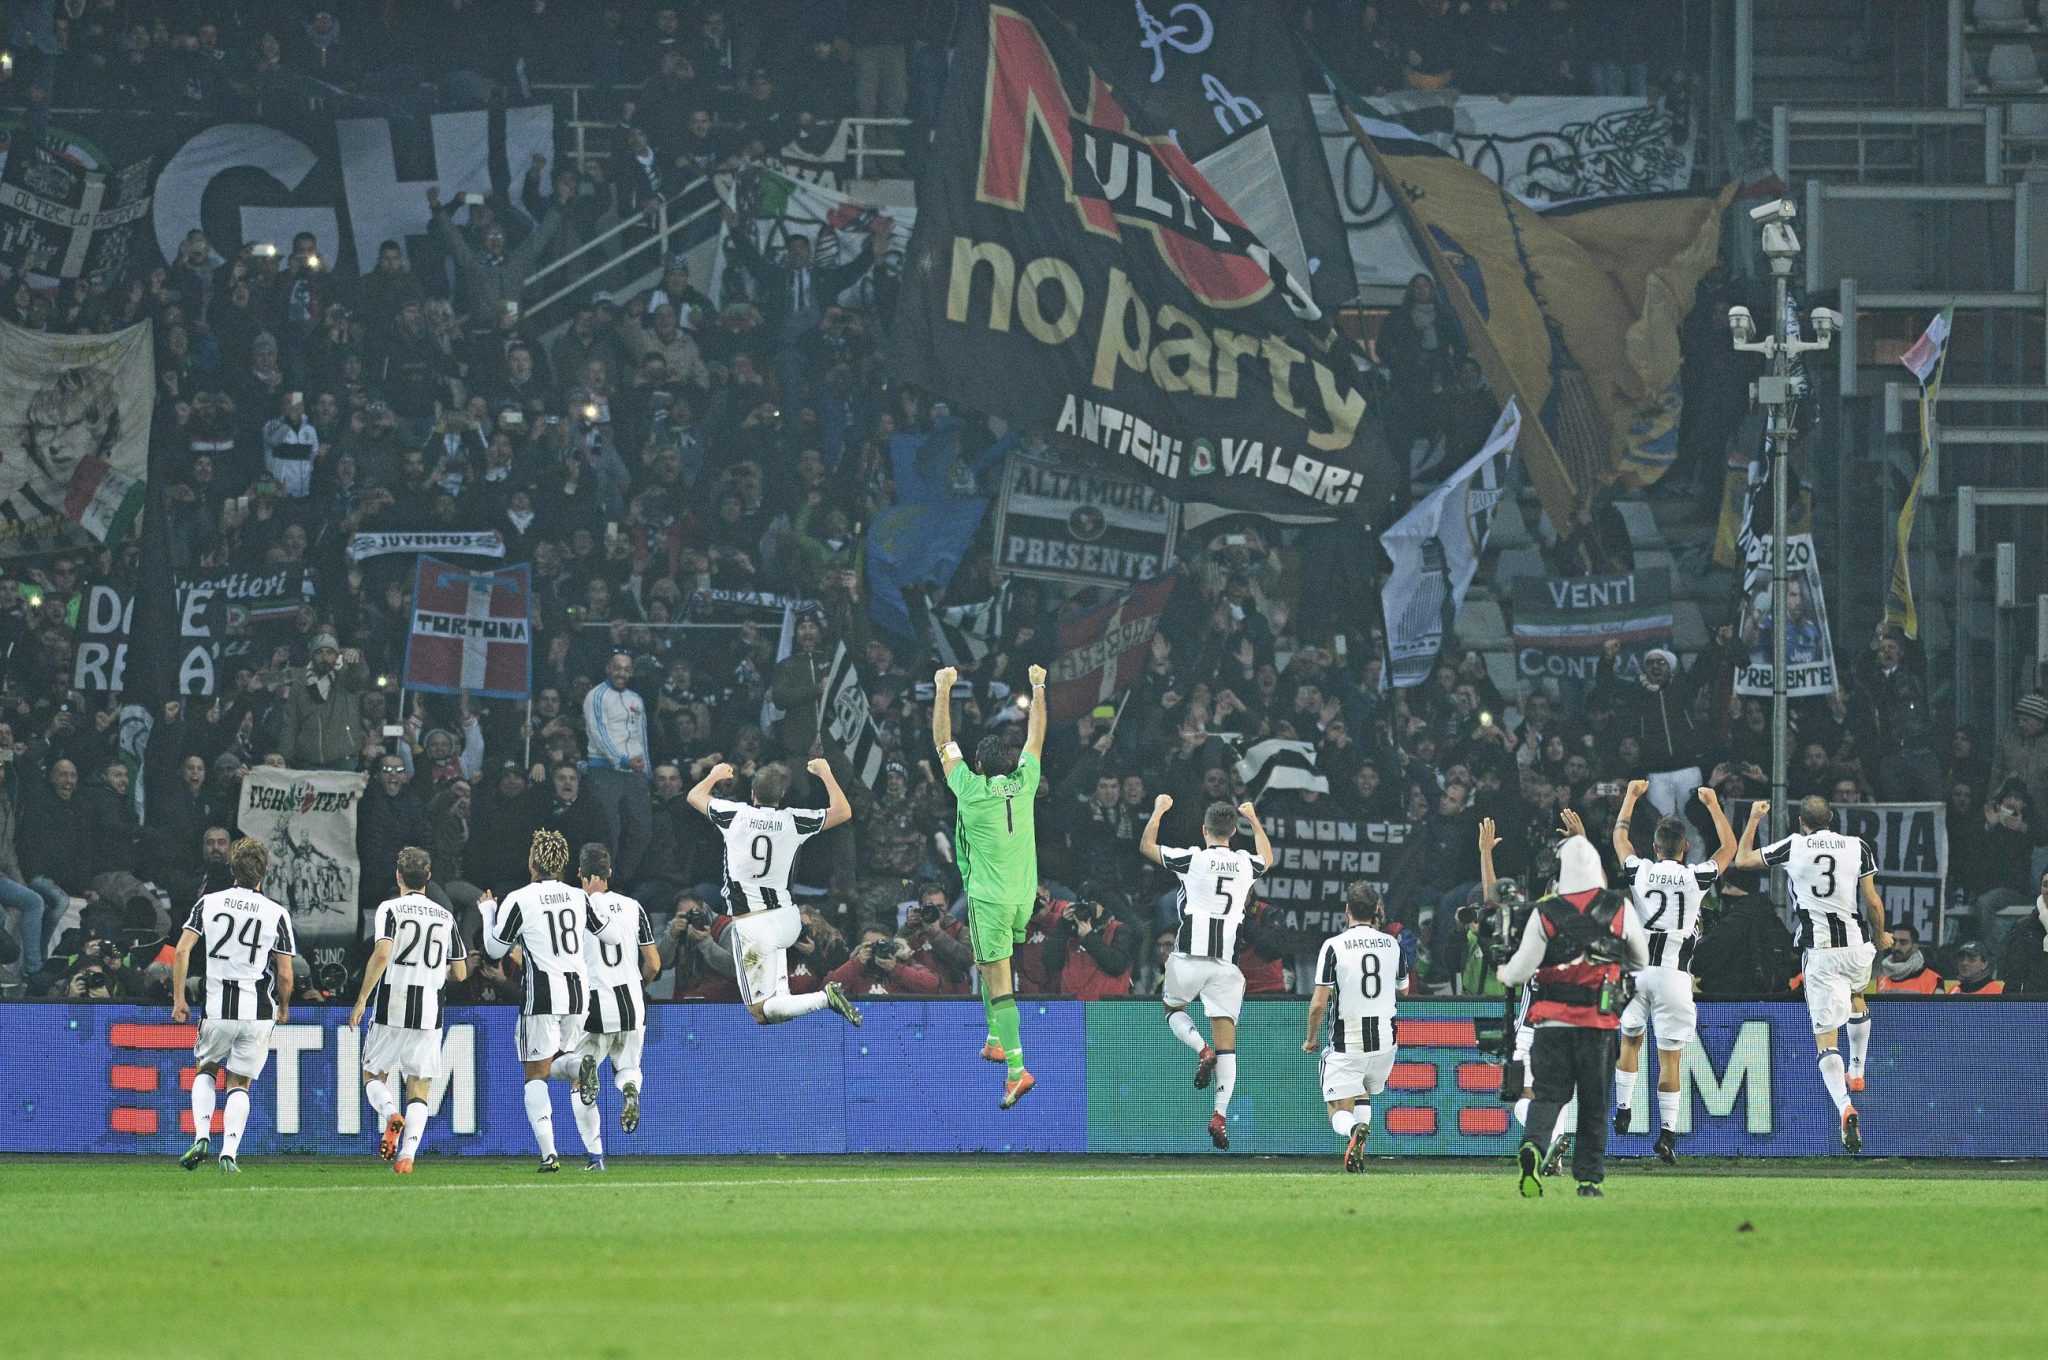 Torino-Juventus 1-3: foto striscioni-coreografie derby della Mole | Blitz quotidiano2048 x 1360